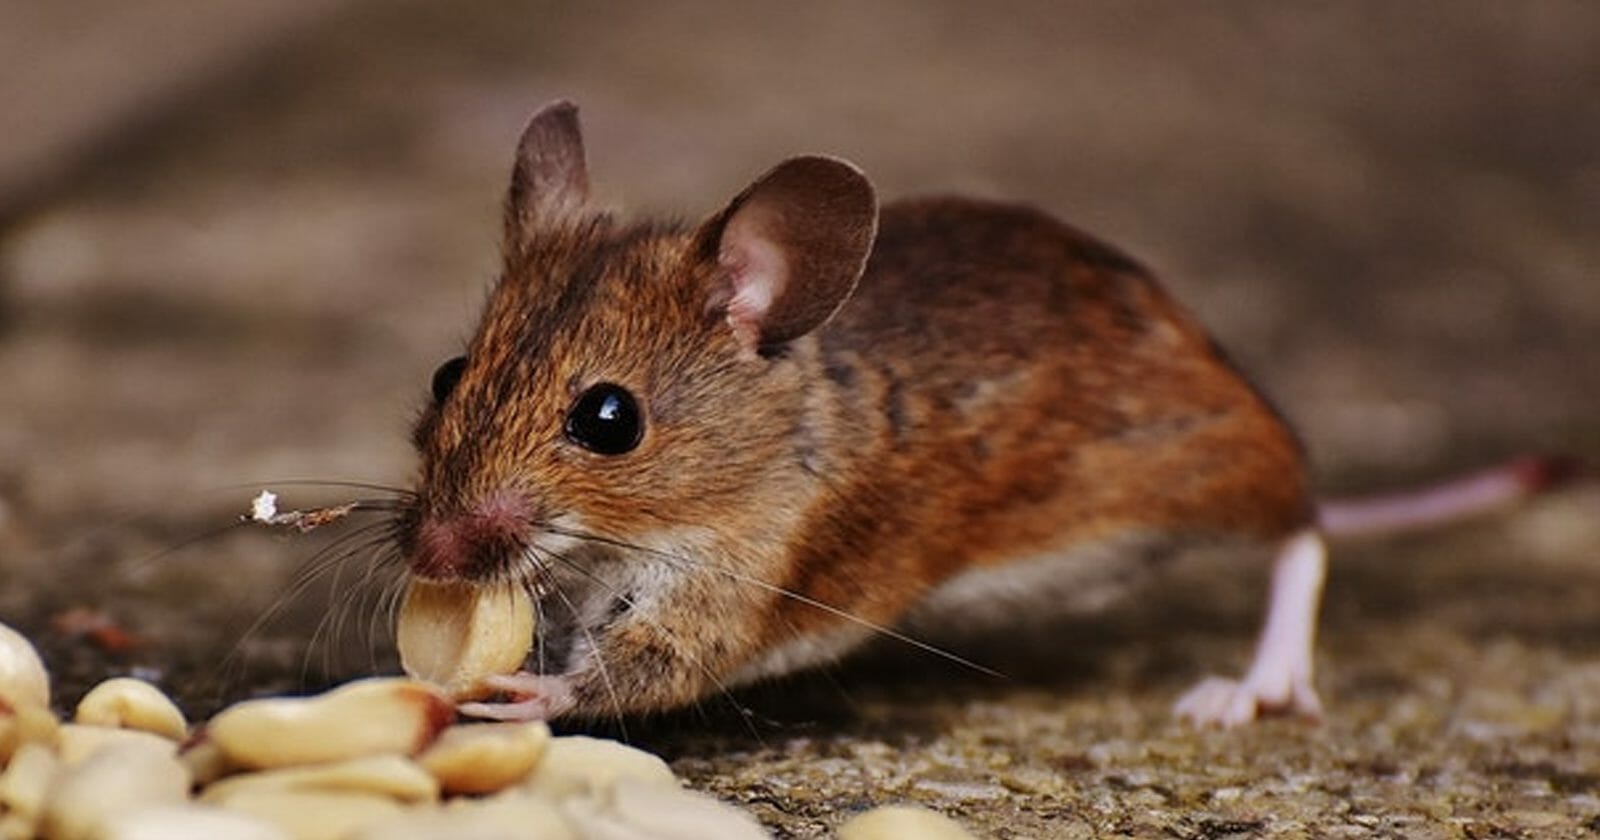 اصطياد الفئران من المنزل watanserb.com